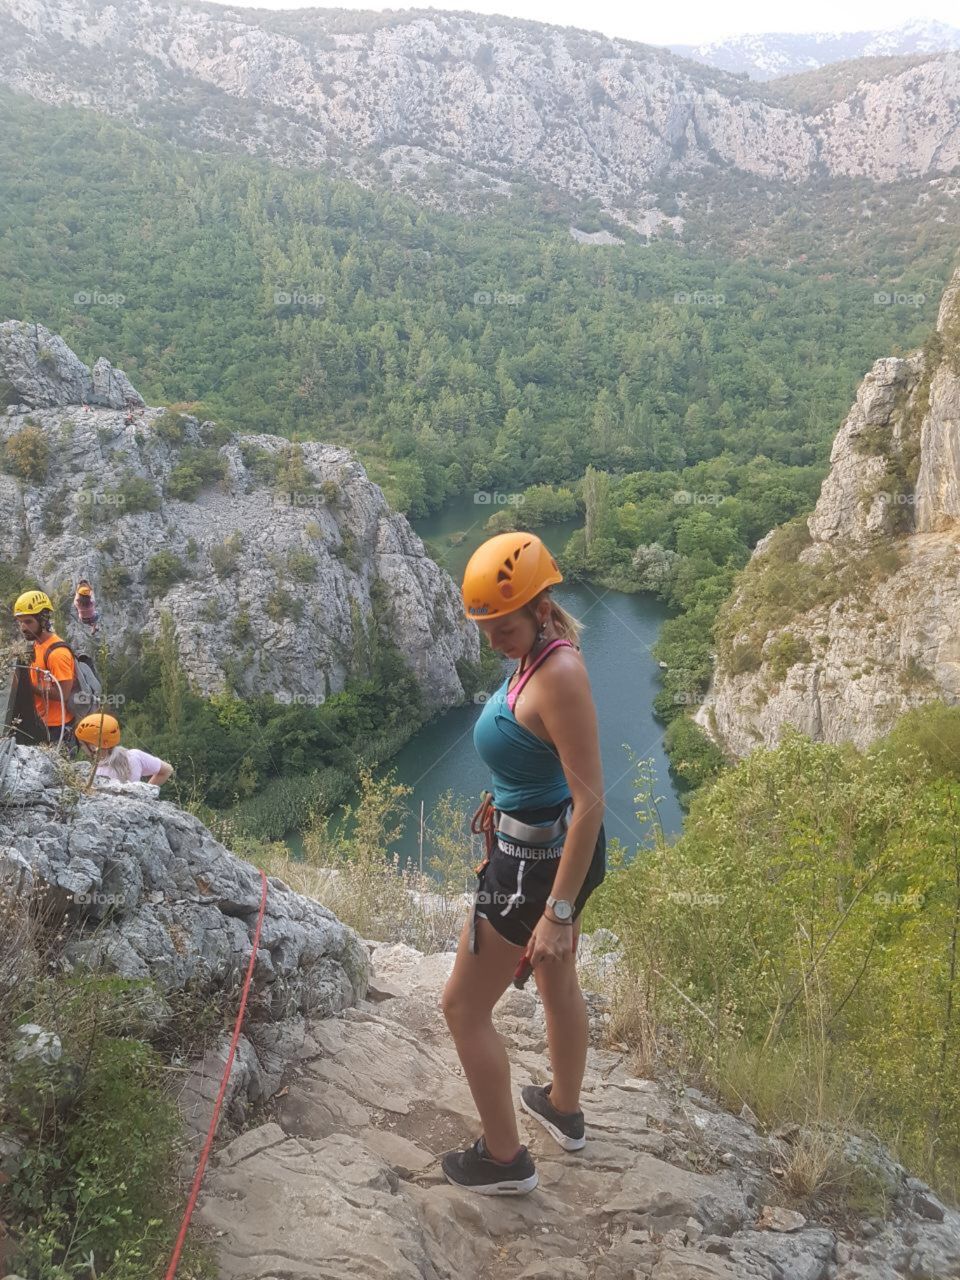 Pic outdoors rock climbing in Croatia 